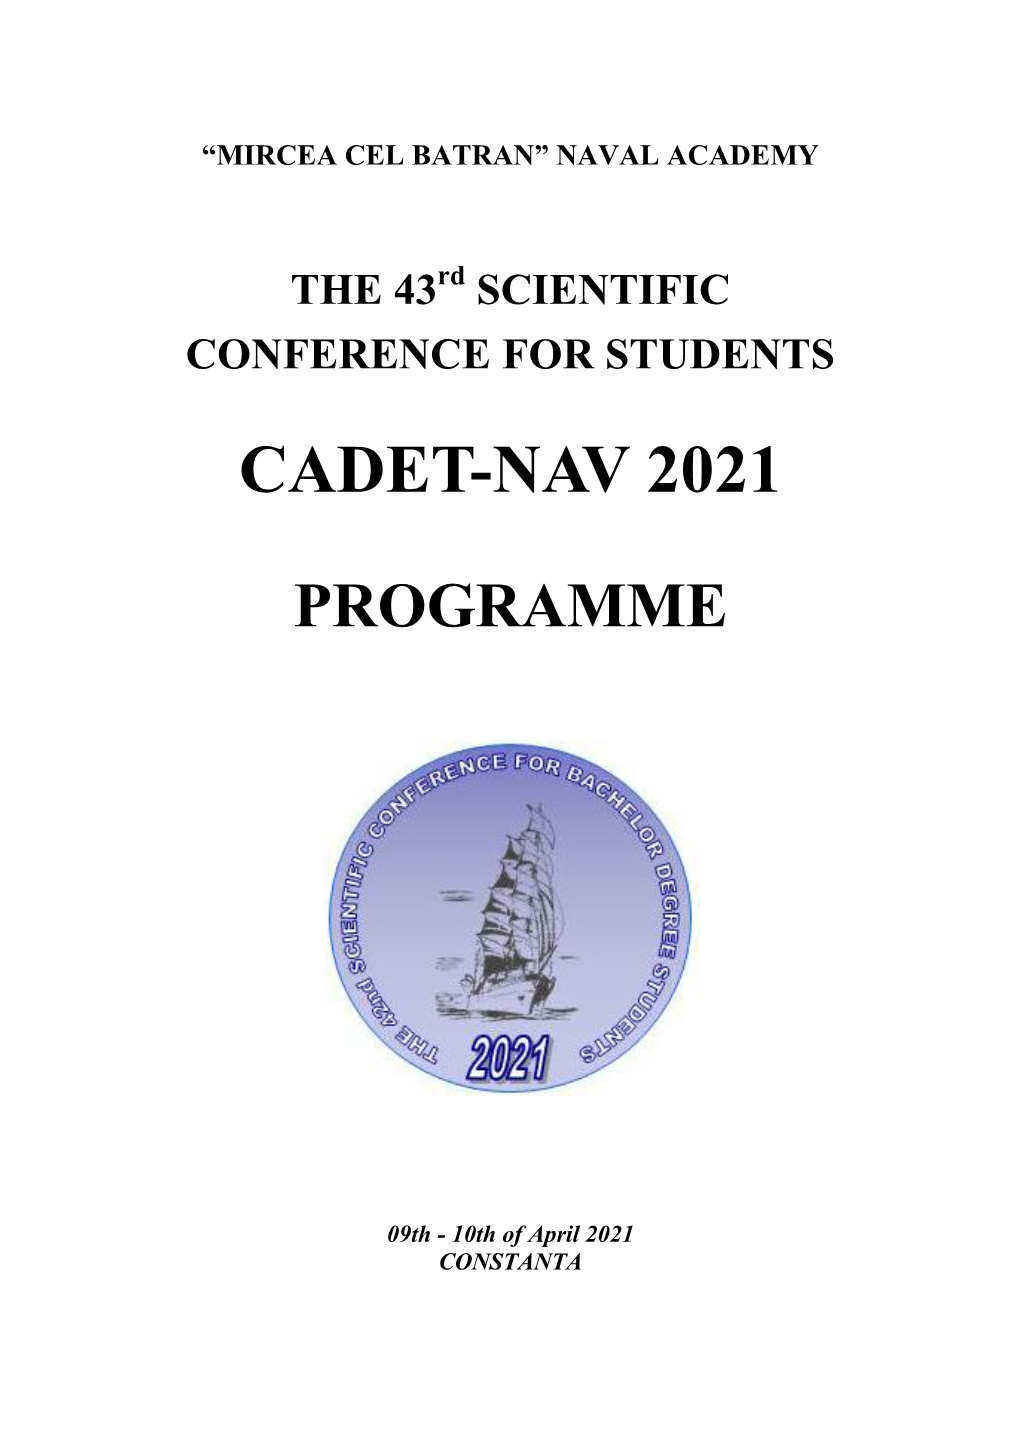 Cadet-Nav 2021